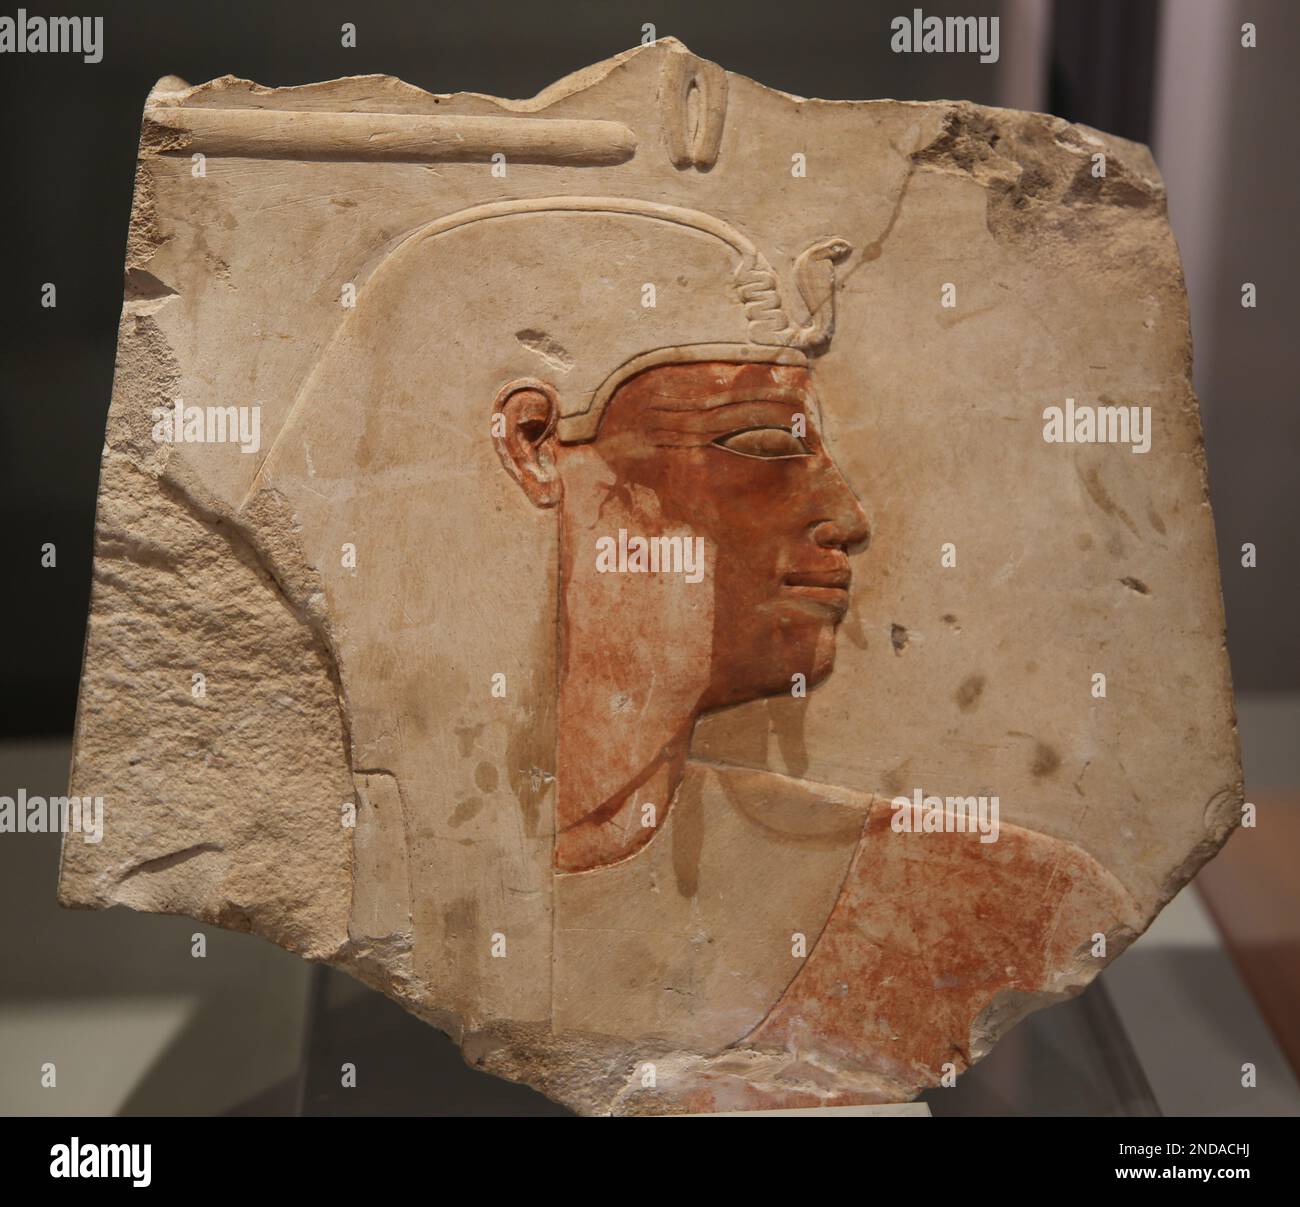 Fragmentrelief von Amenhotep I (1525-1504 v. Chr.). Neues Königreich, Dynastie XVIII Lackierter Kalkstein. Aus Oberägypten, großer Amon-Tempel in Karnak, cha Stockfoto